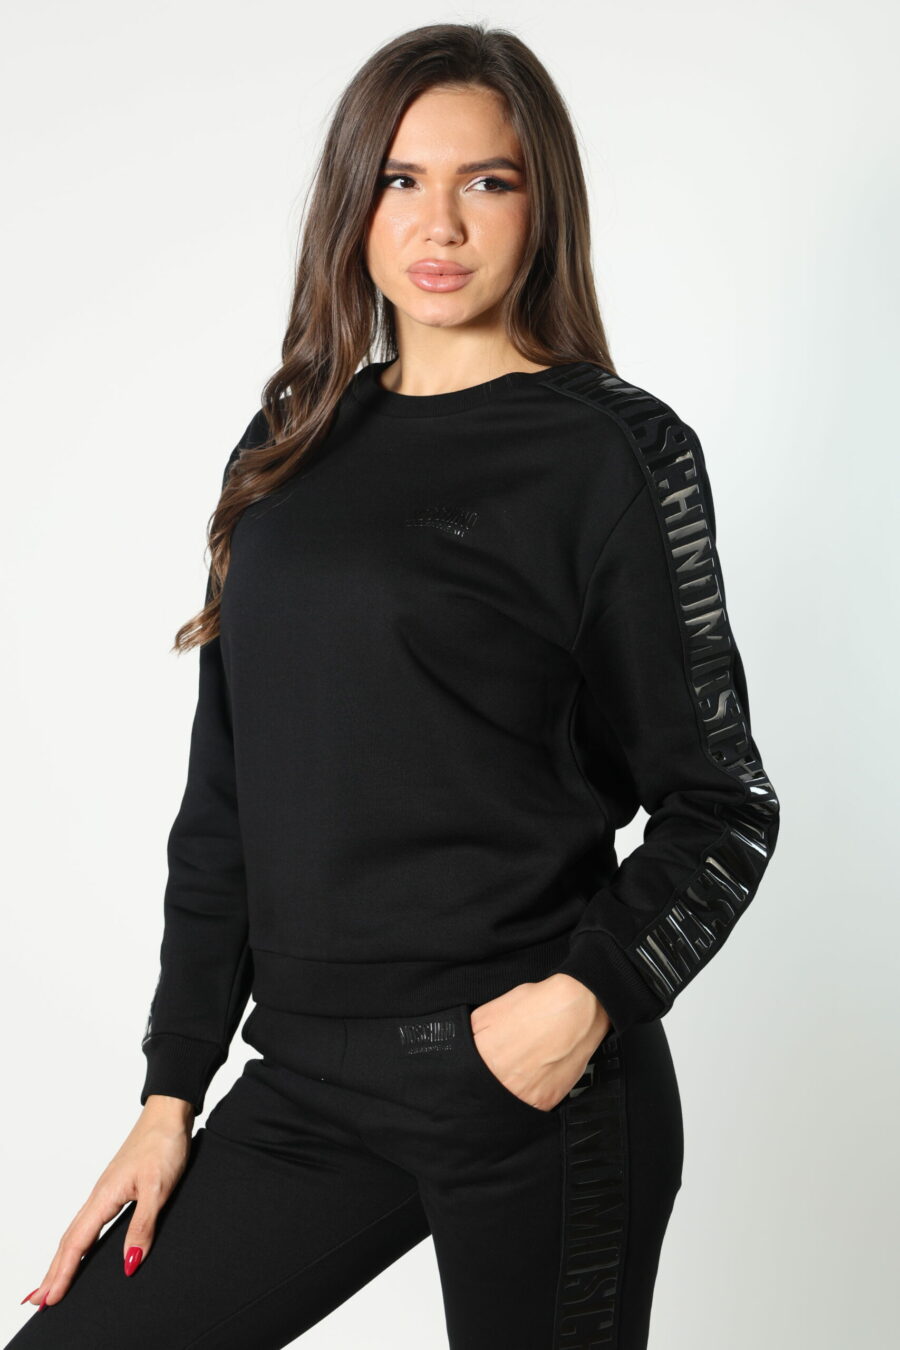 Schwarzes Sweatshirt mit monochromem Bandlogo an den Seiten - 8052865435499 470 skaliert